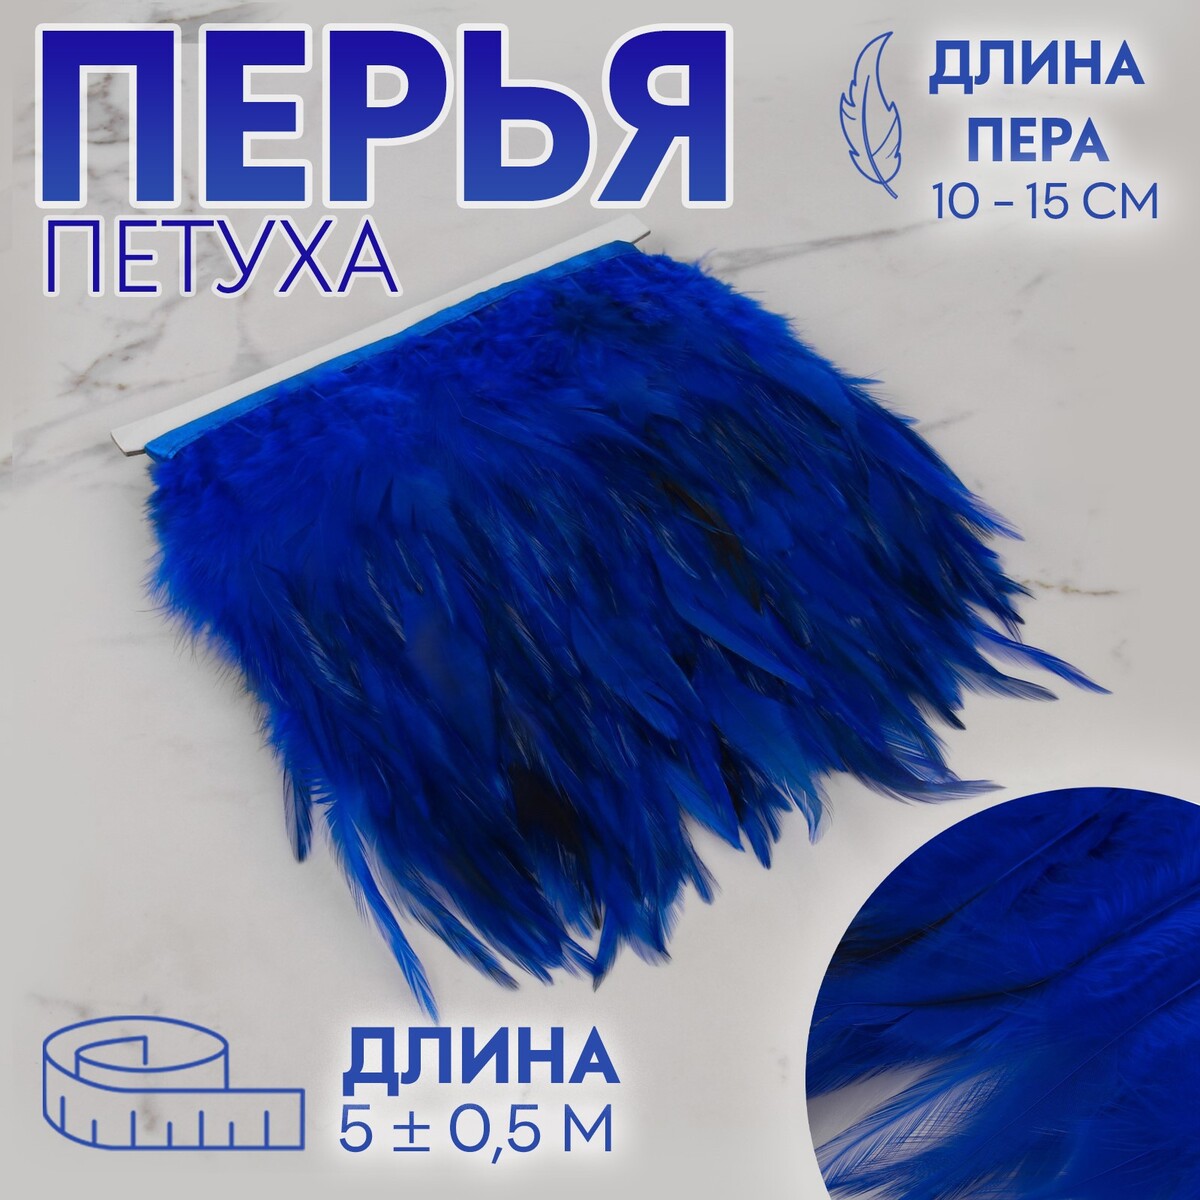 Тесьма с перьями петуха, 10-15 см, 5 ± 0,5 м, цвет синий